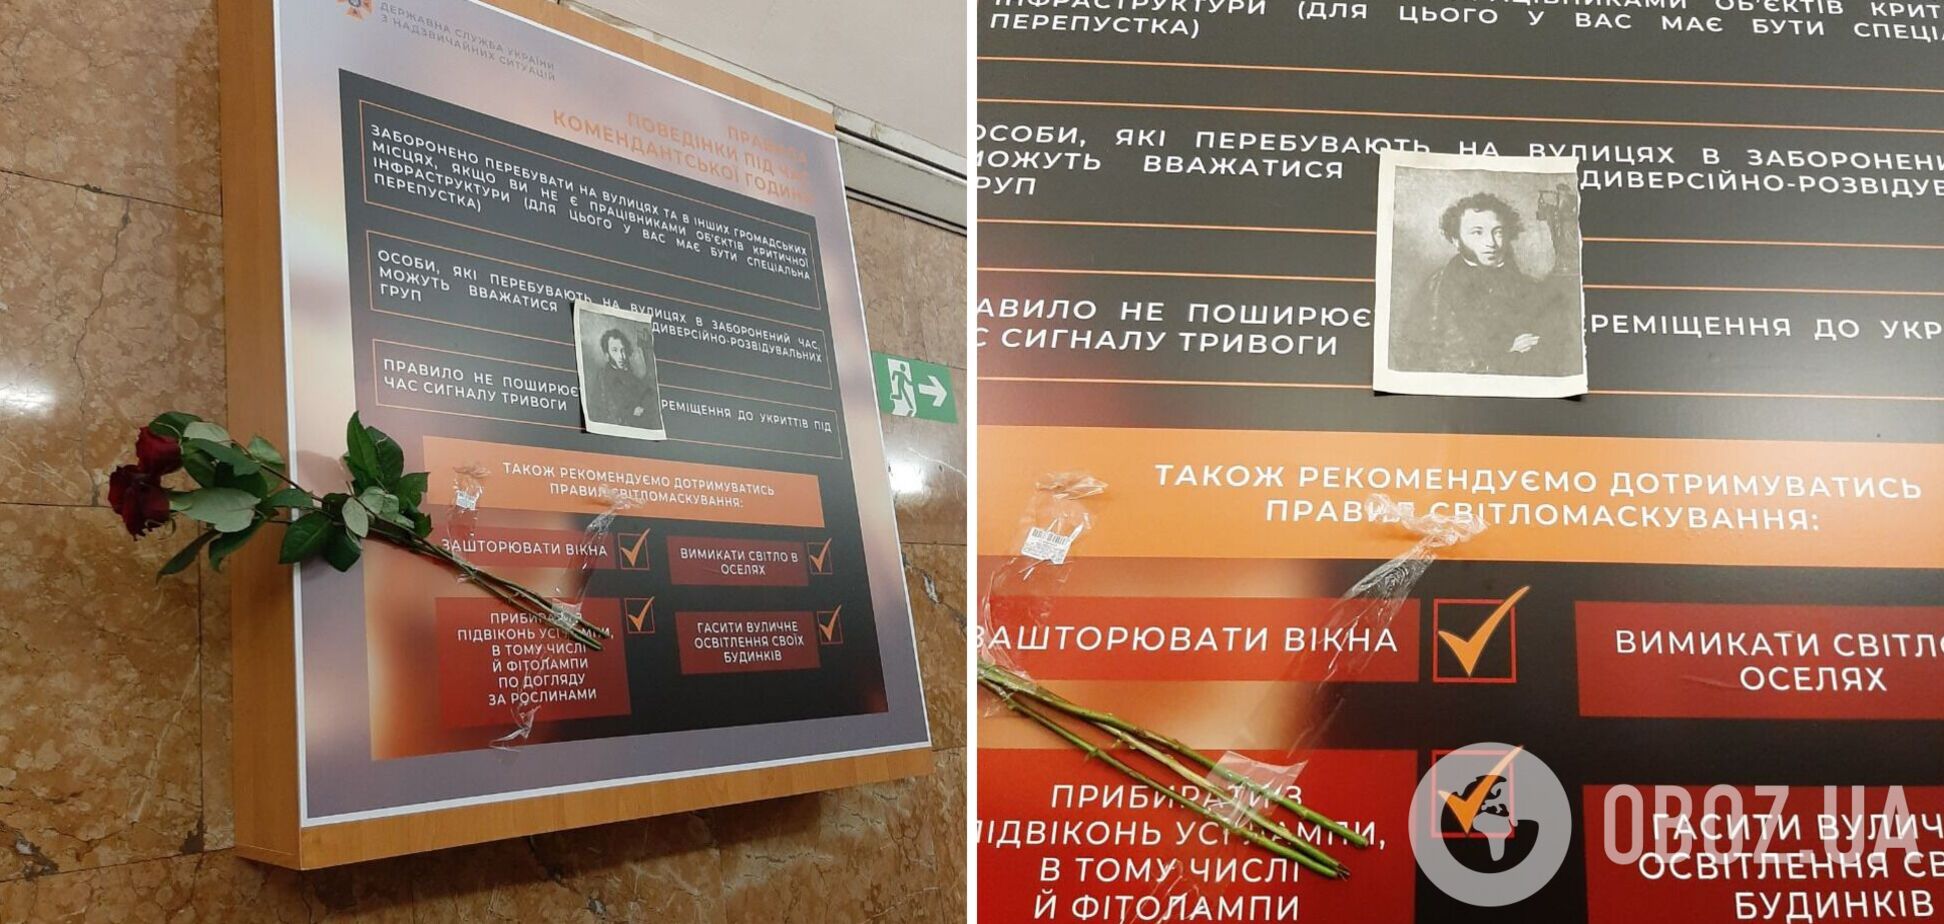 В Києві на станцію метро 'Університет' принесли зображення Пушкіна і квіти на місце, до стояв його бюст. Ексклюзивні фото   